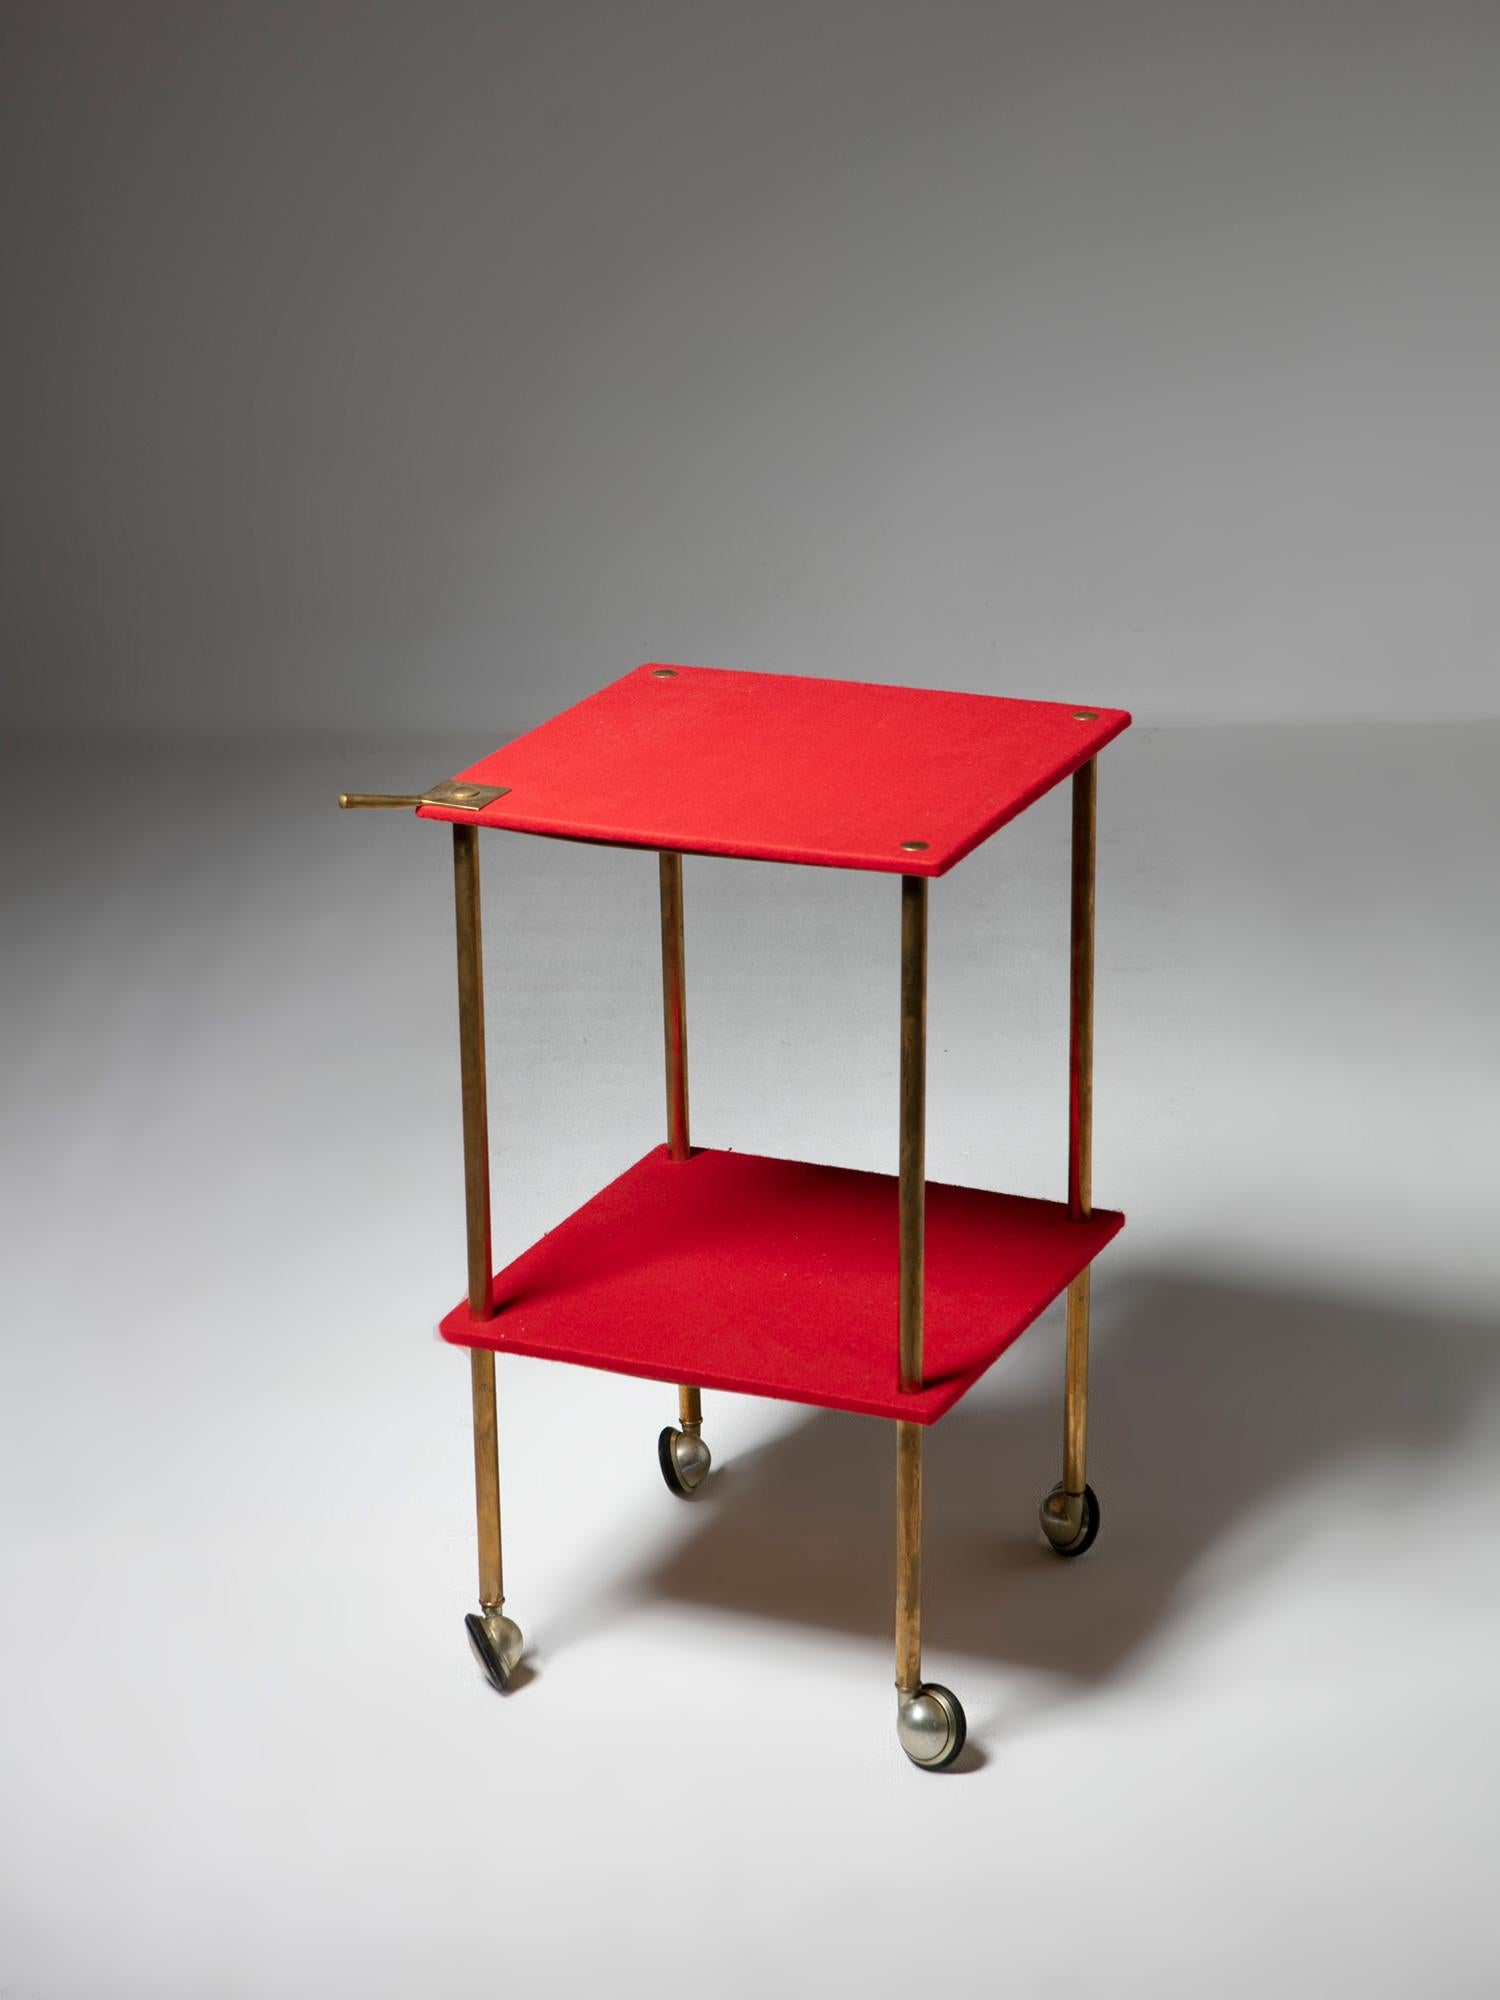 Rare table d'appoint/chariot modèle T9 de Luigi Caccia Dominioni pour Azucena.
Panneaux de bois recouverts de feutre rouge, cadre en laiton.